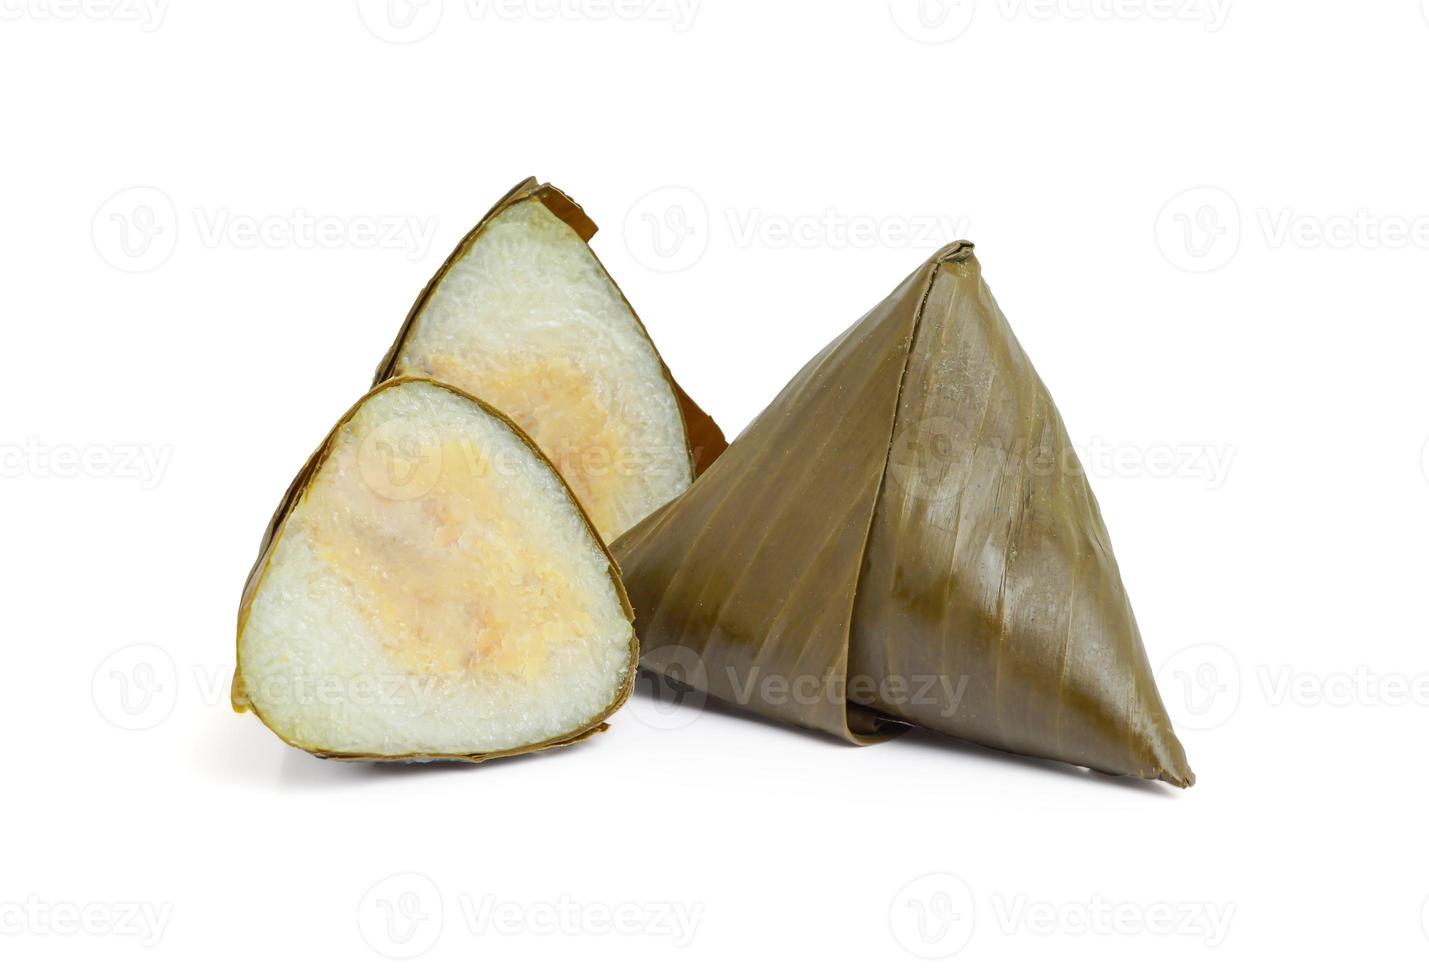 Ba jang o bola de masa de arroz pegajoso envuelto en hojas de plátano sobre fondo blanco. foto